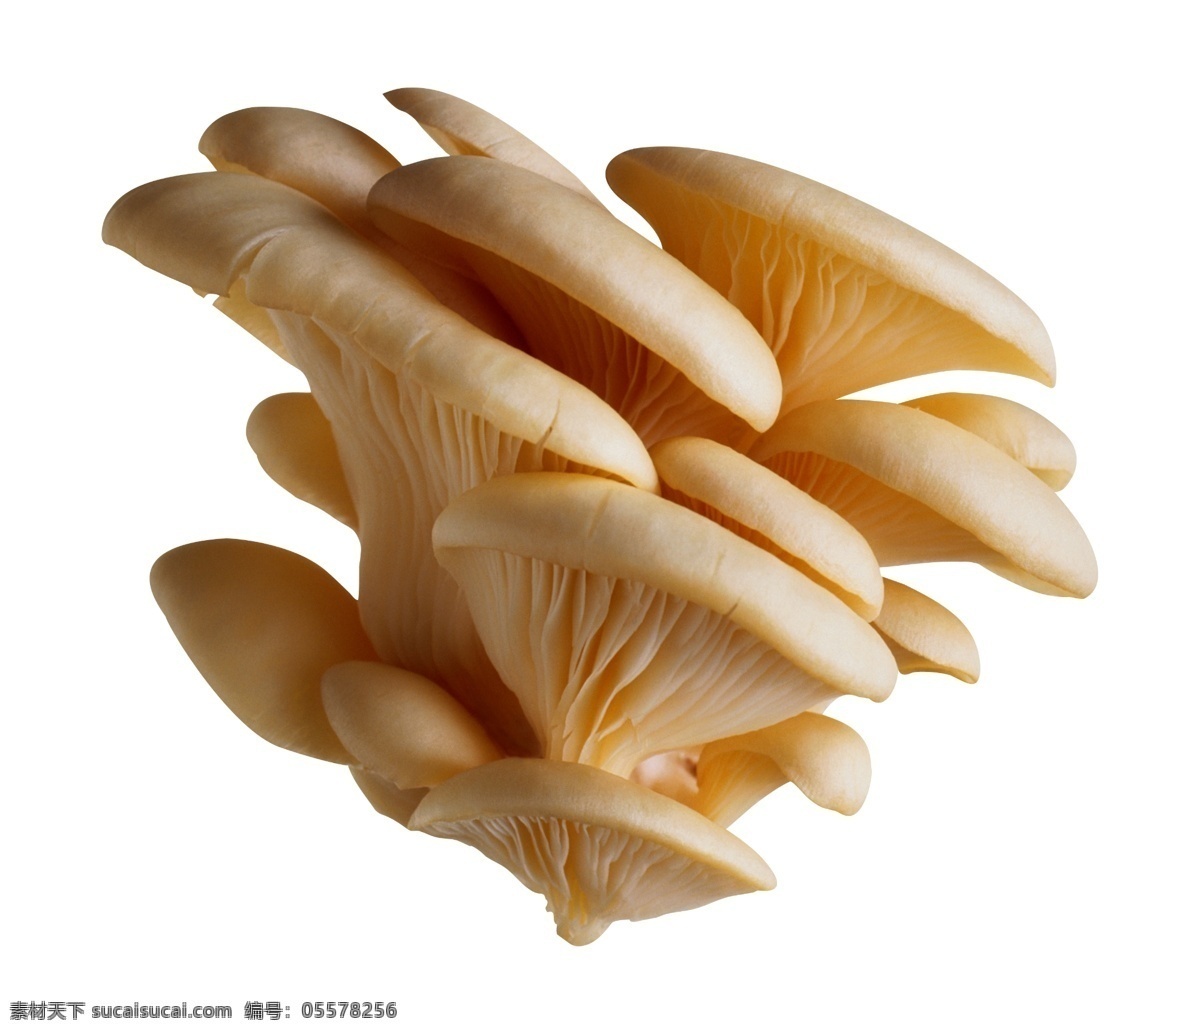 平菇 野生蘑菇 蘑菇汤 蘑菇群 干净的蘑菇 菇类 素材图